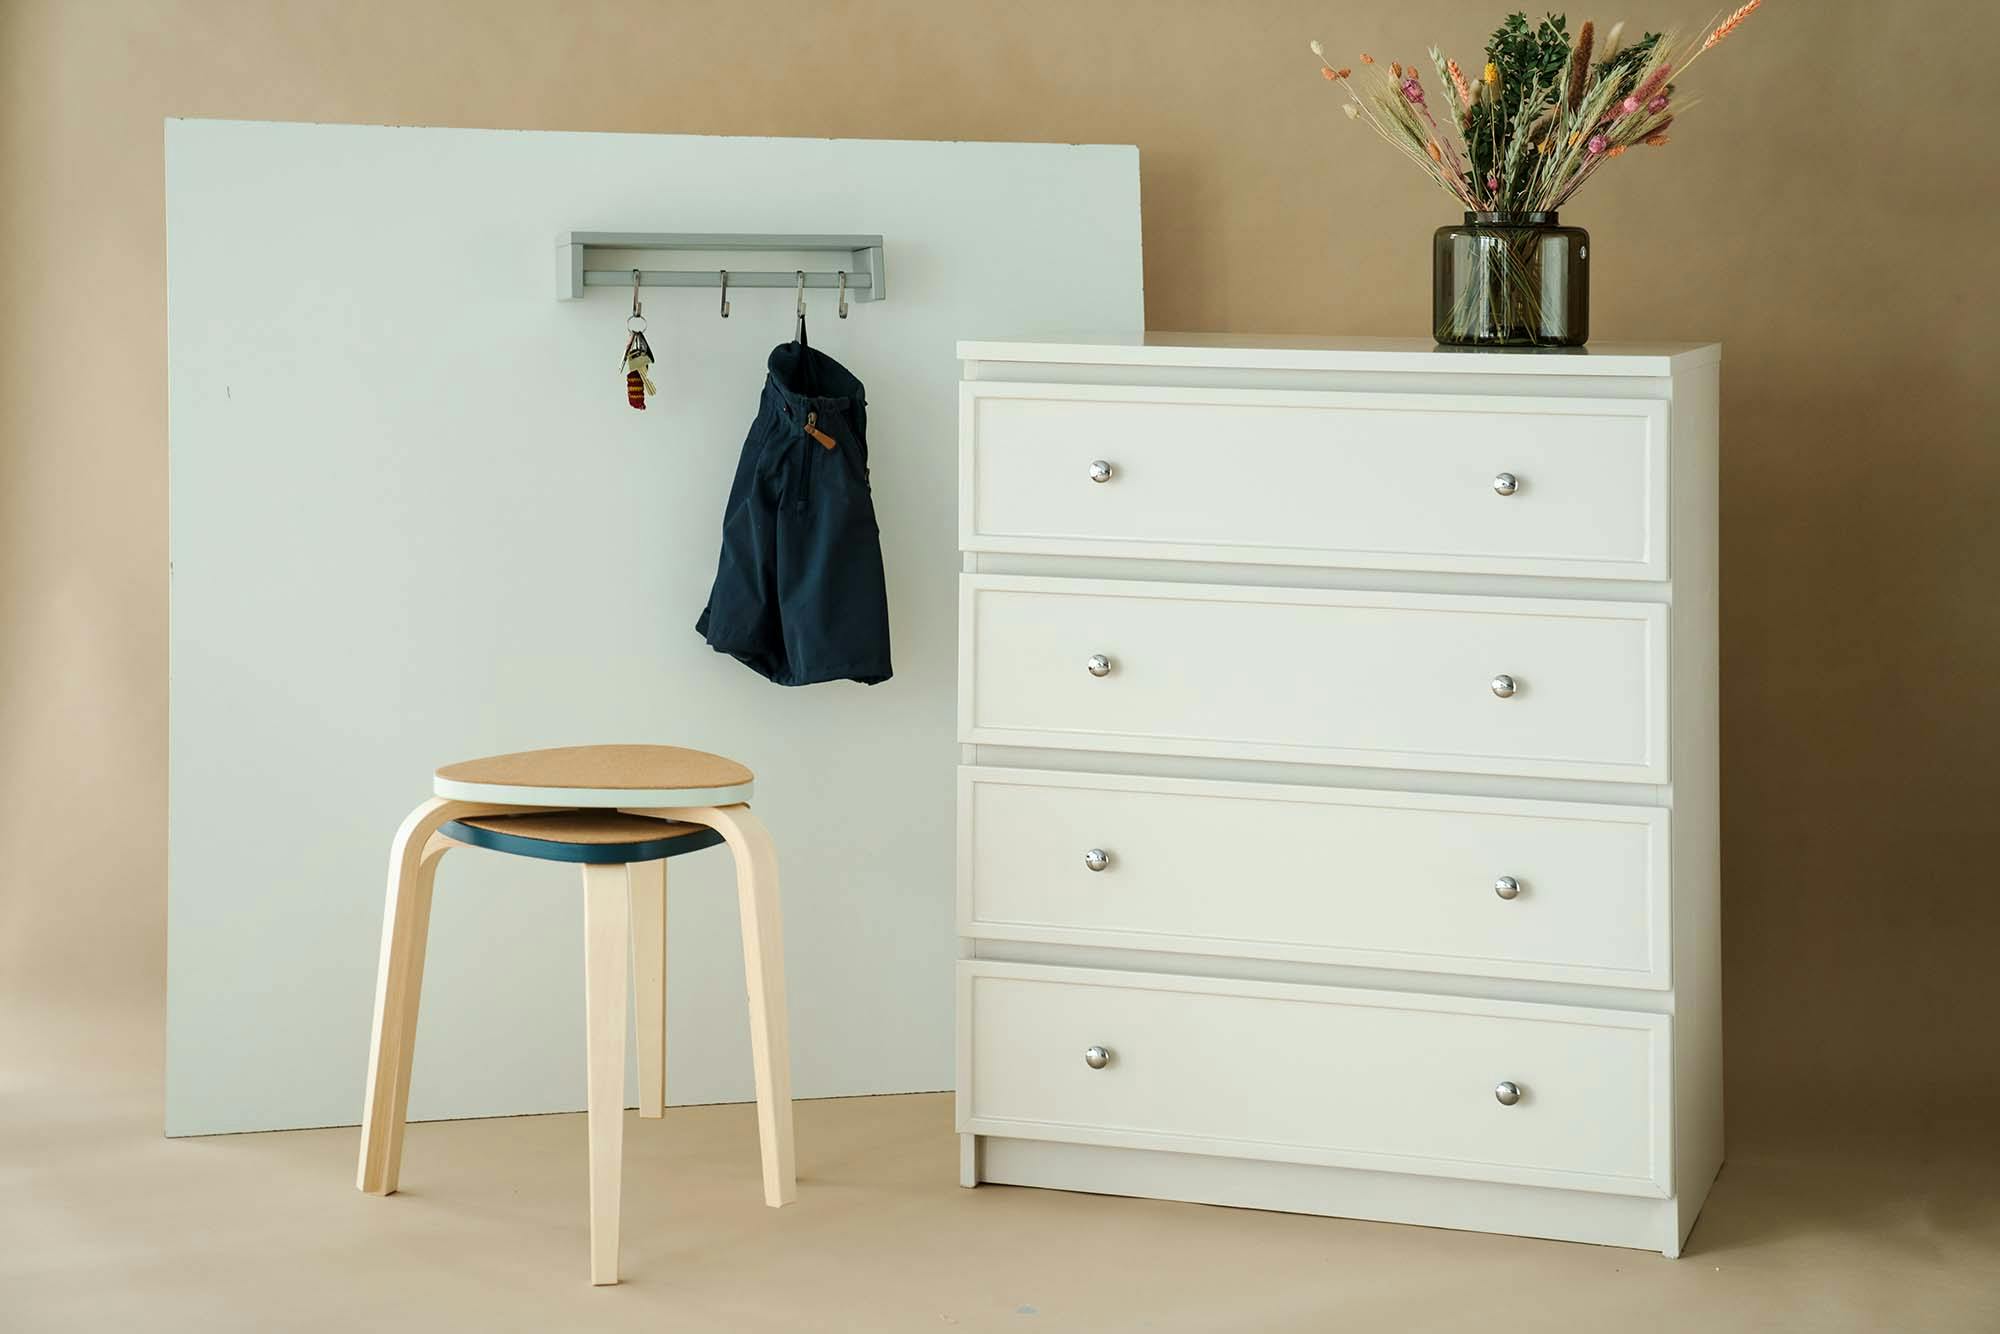 ekstremt Mig Hvad Nadia Zinck guider: 3 IKEA-hacks, der giver dine møbler personlighed |  Femina